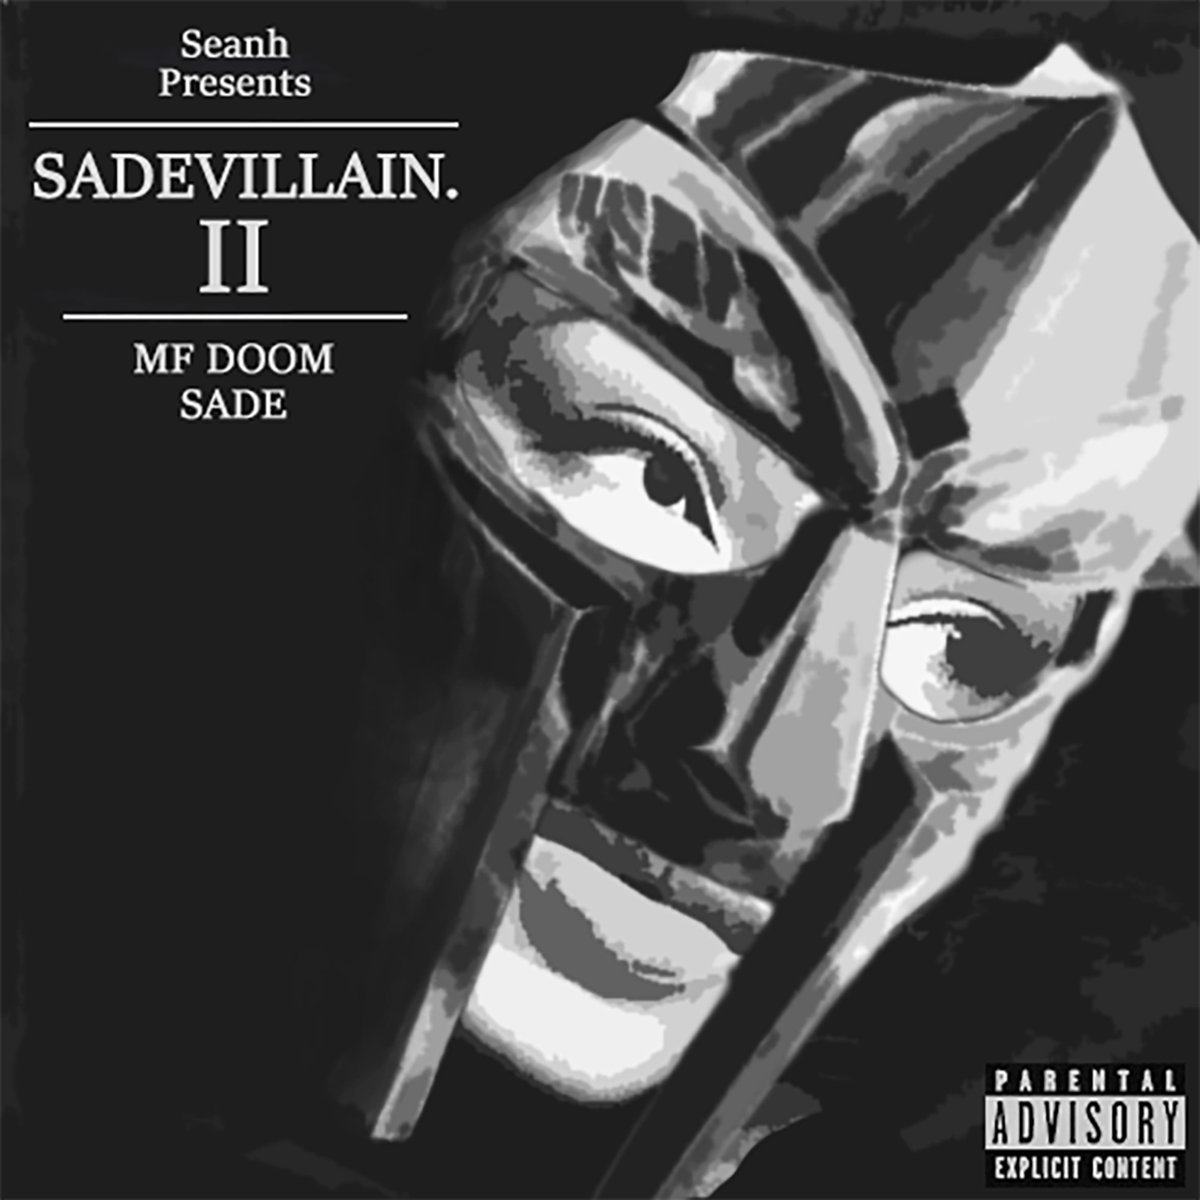 Download “Sadevillain 2”, MF DOOM x Sade by Seanh